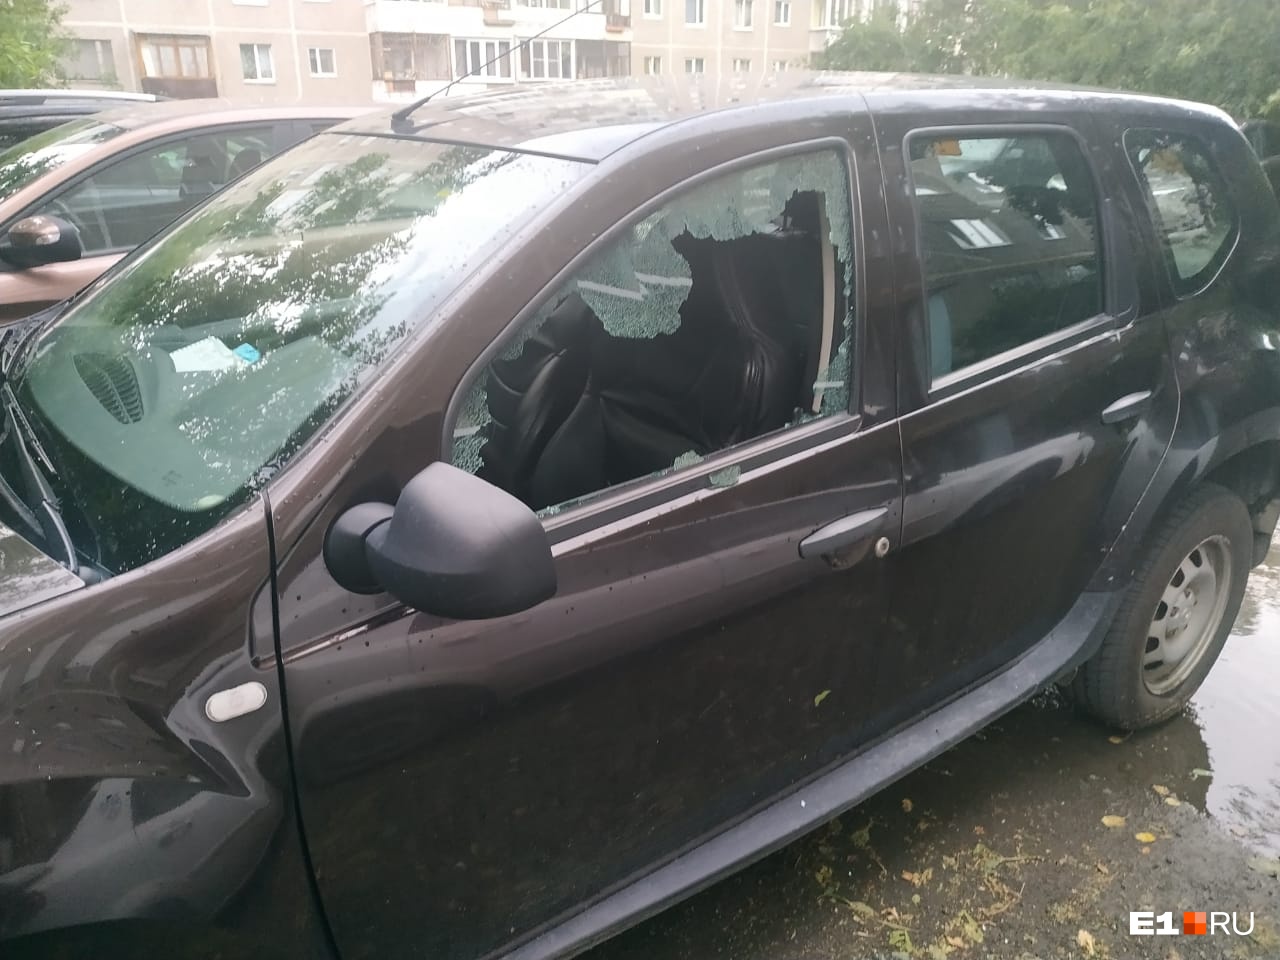 Камни отлетали от стены дома и разбивали окна: в Екатеринбурге во время урагана пострадали машины